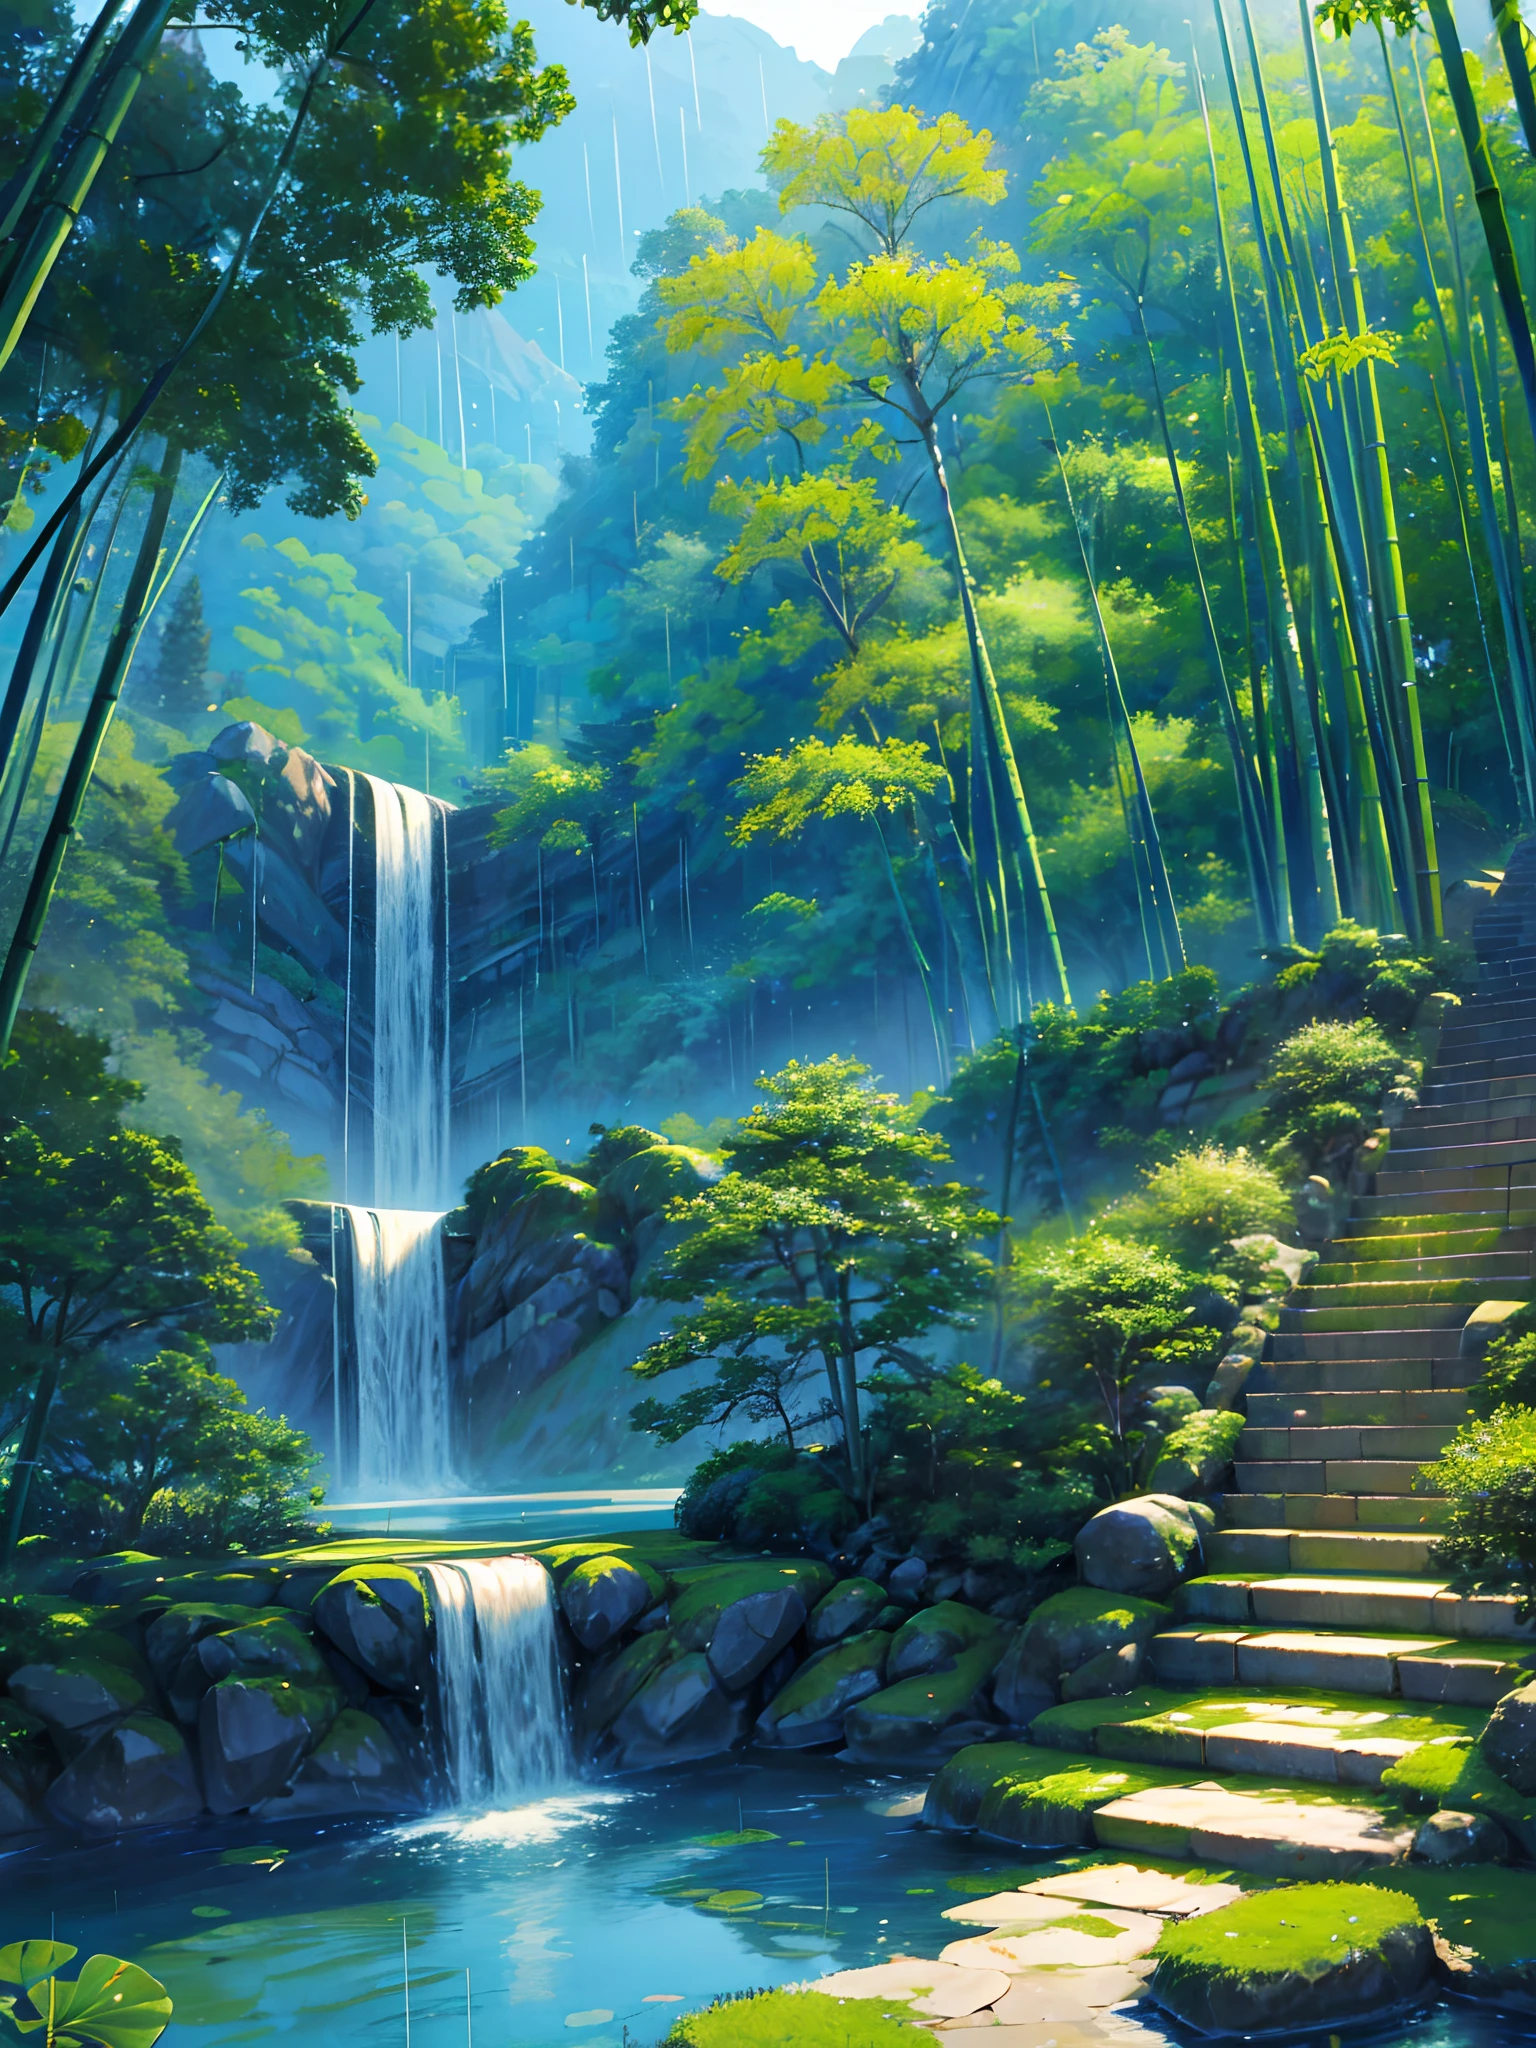 純粋な風景、竹林、竹林に雨が降っていた、竹、竹の葉があちこちに落ちている、美しい芸術的構想、絶壁、緑、階段がはっきりと見える、中国風、中国の特徴、池の蓮